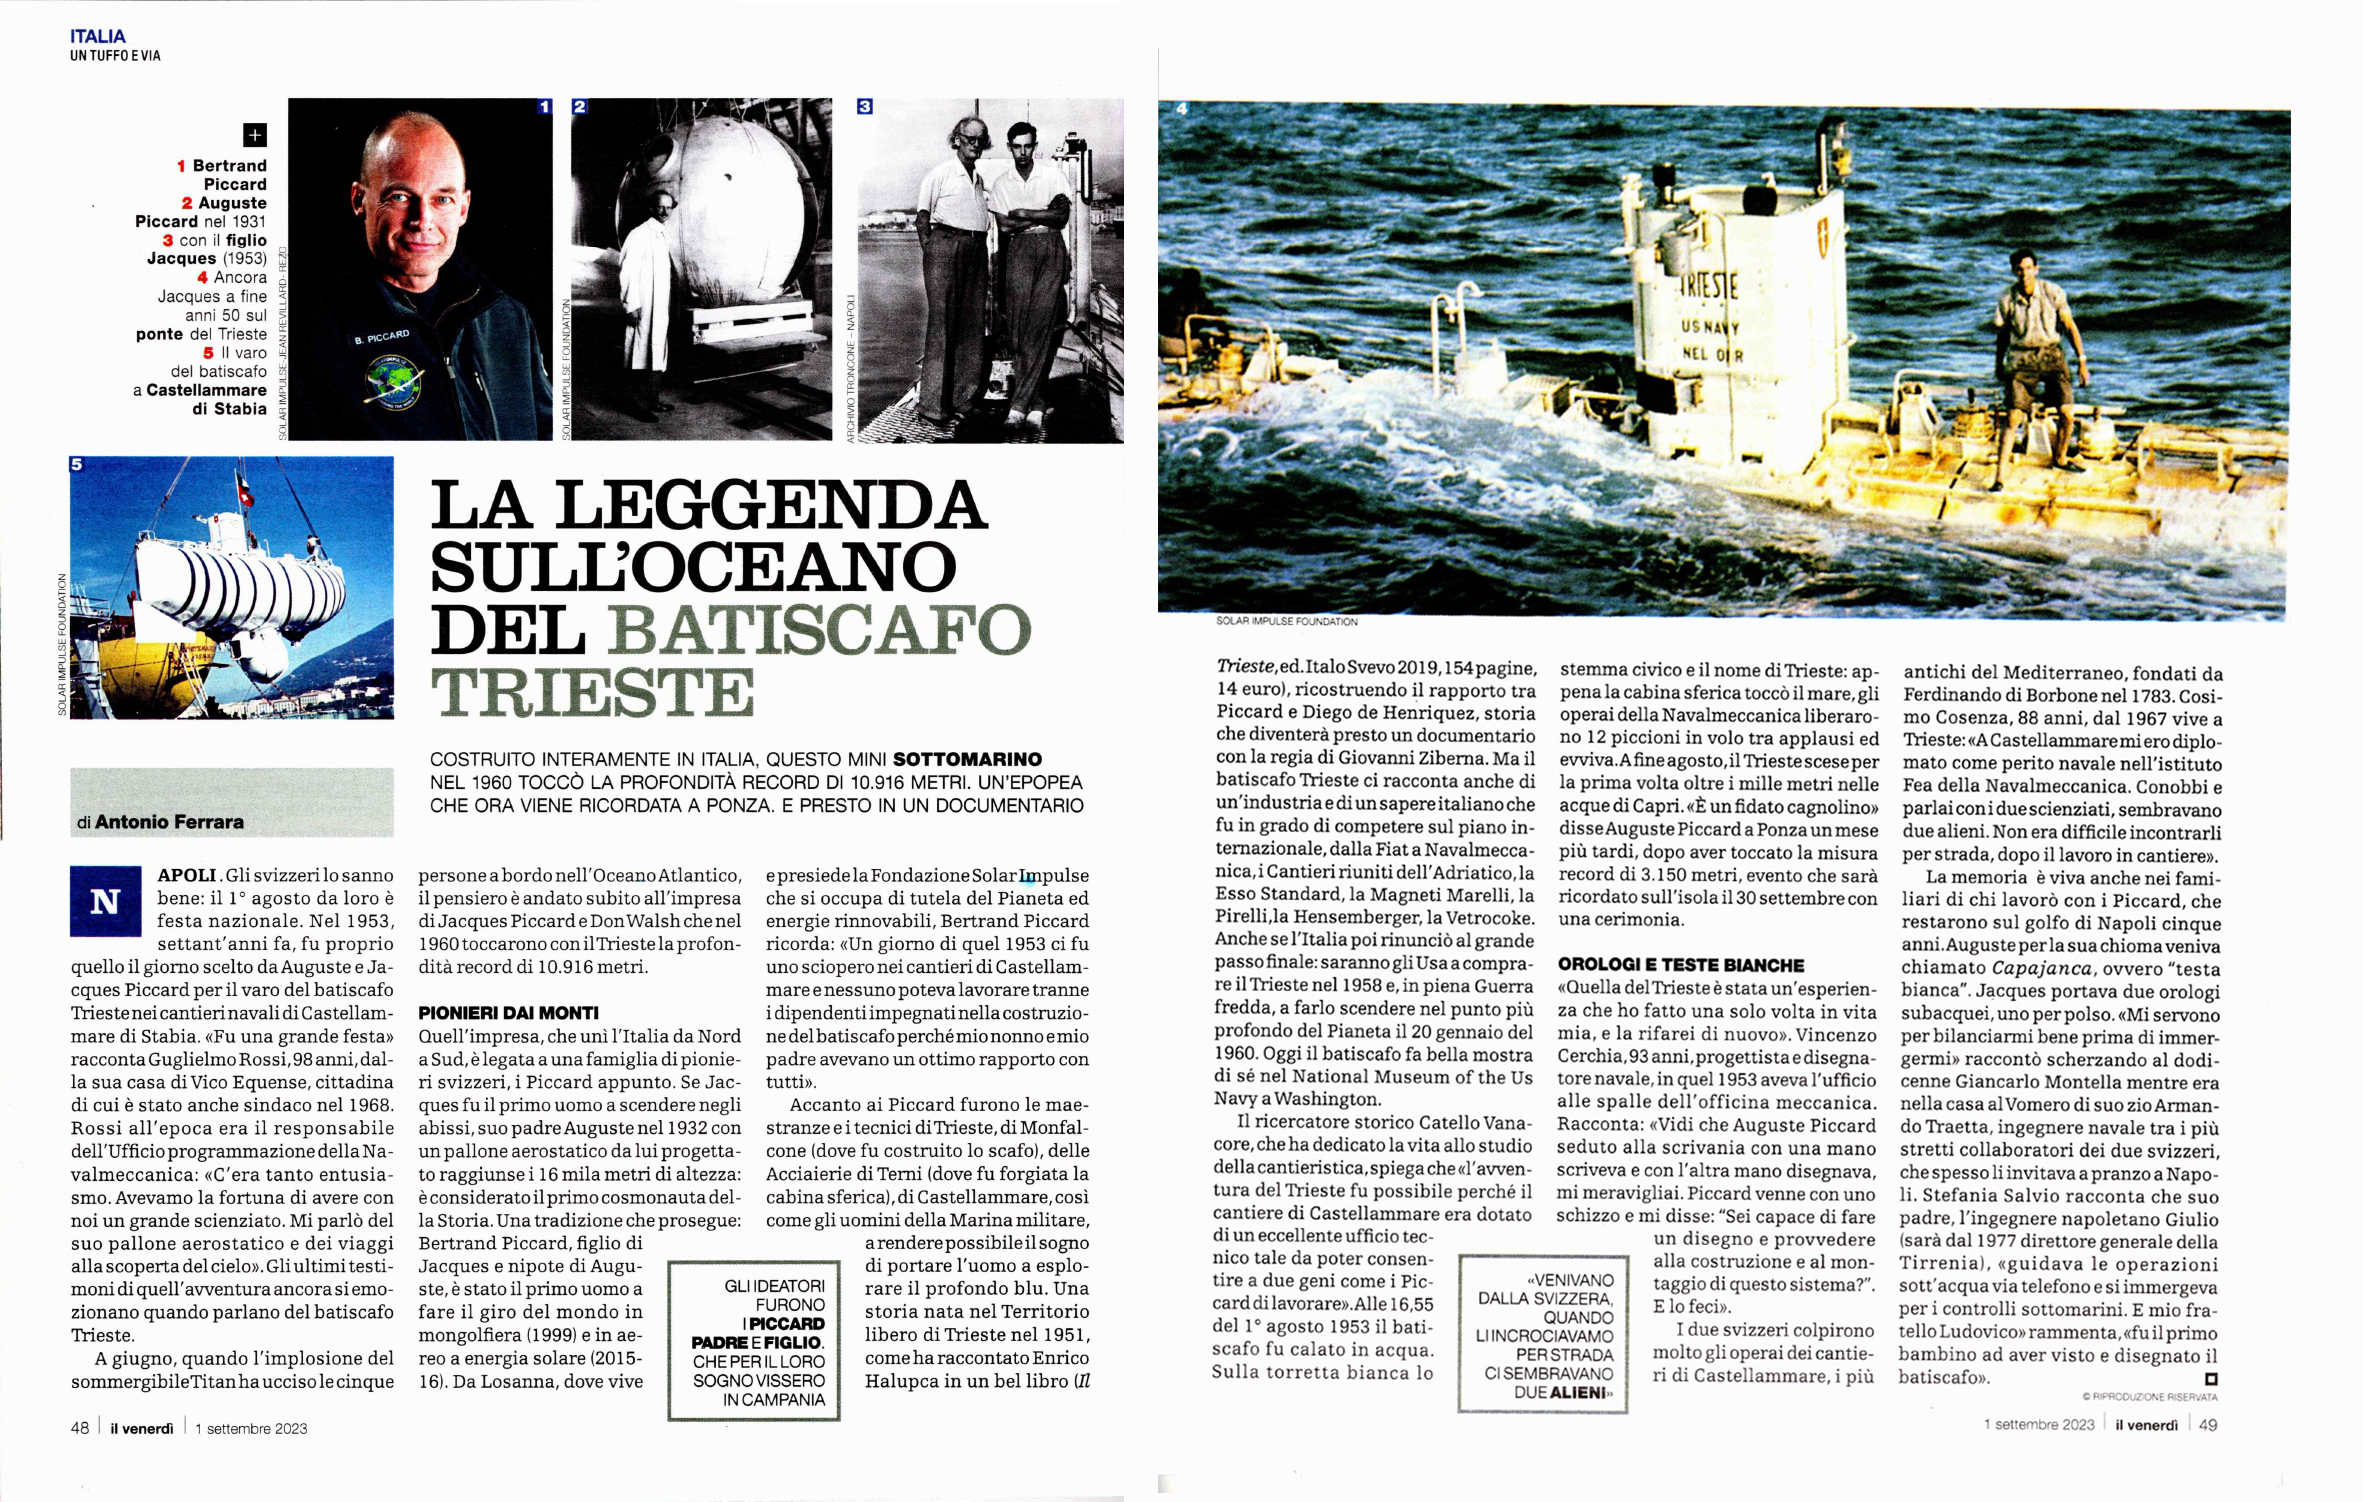 Sessant'anni fa l'impresa del batiscafo Trieste - Panorama